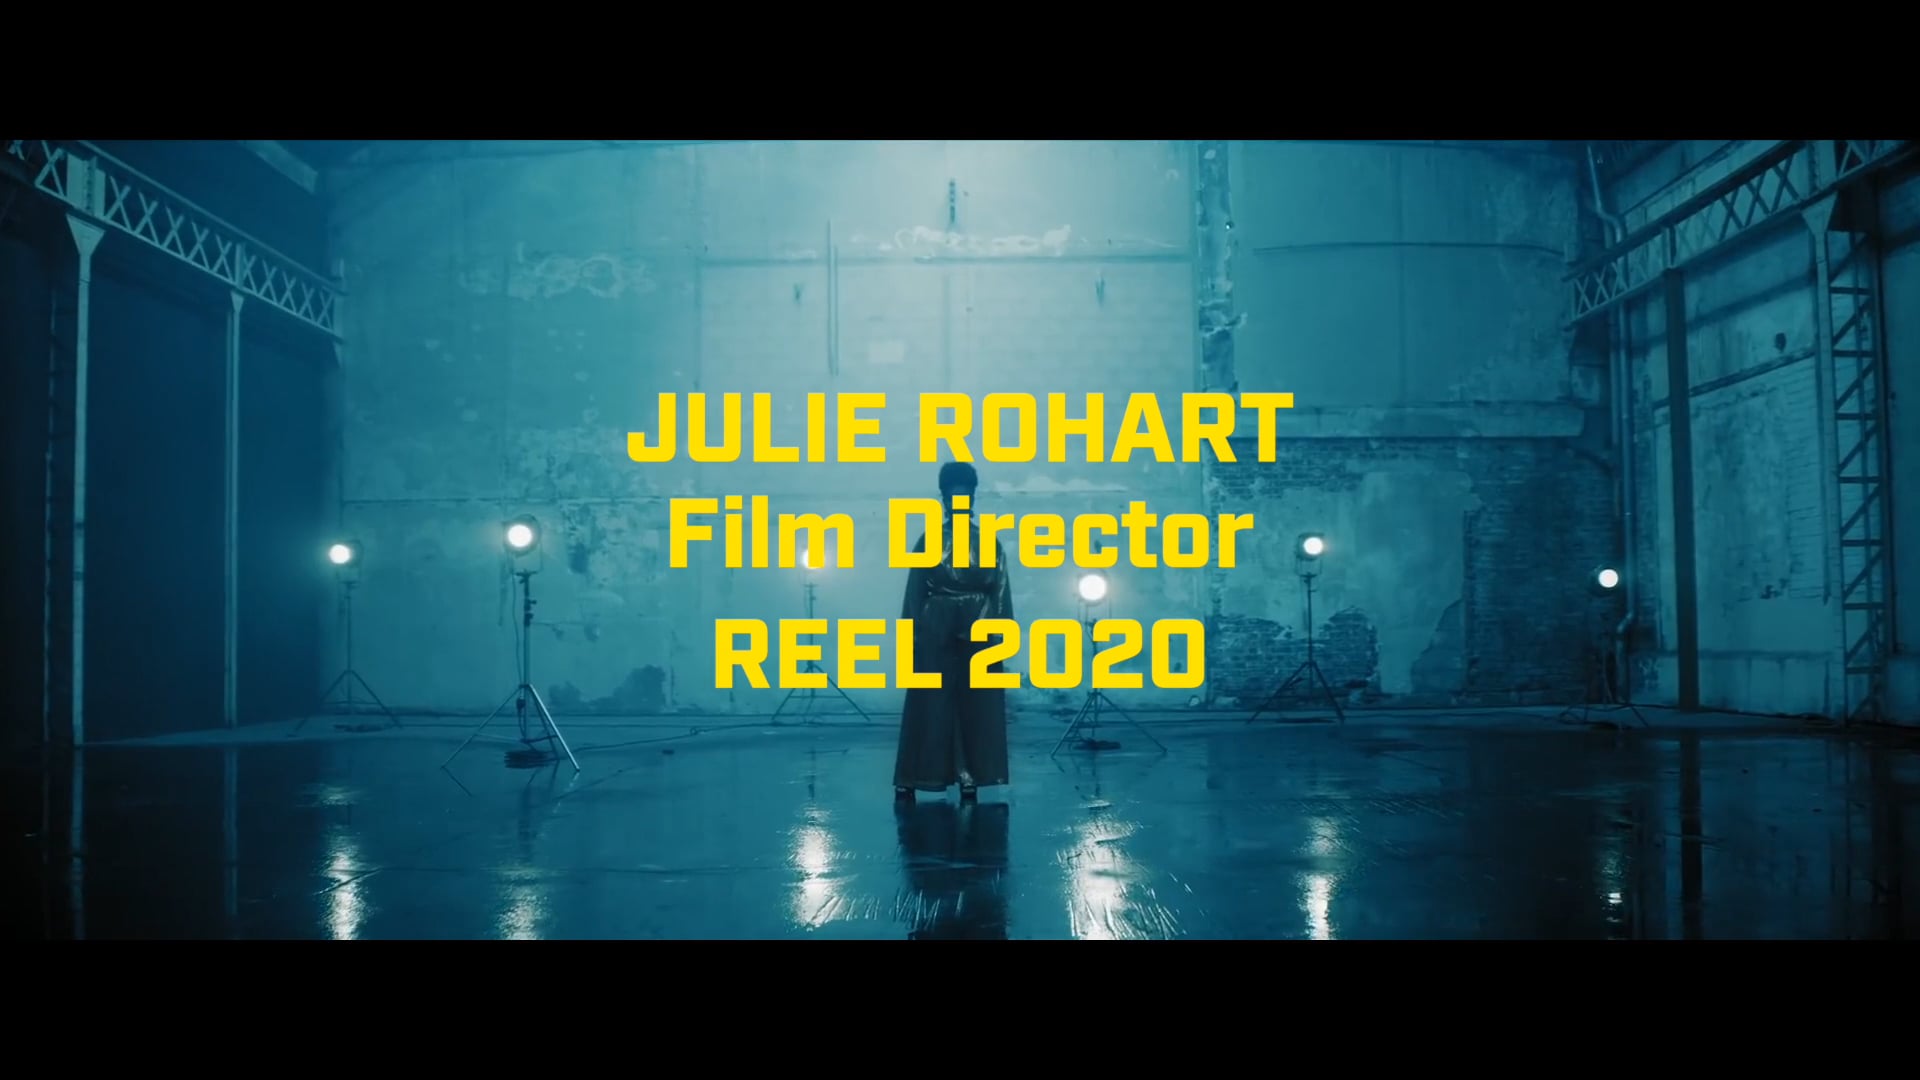 DIRECTOR REEL 2020 JULIE ROHART